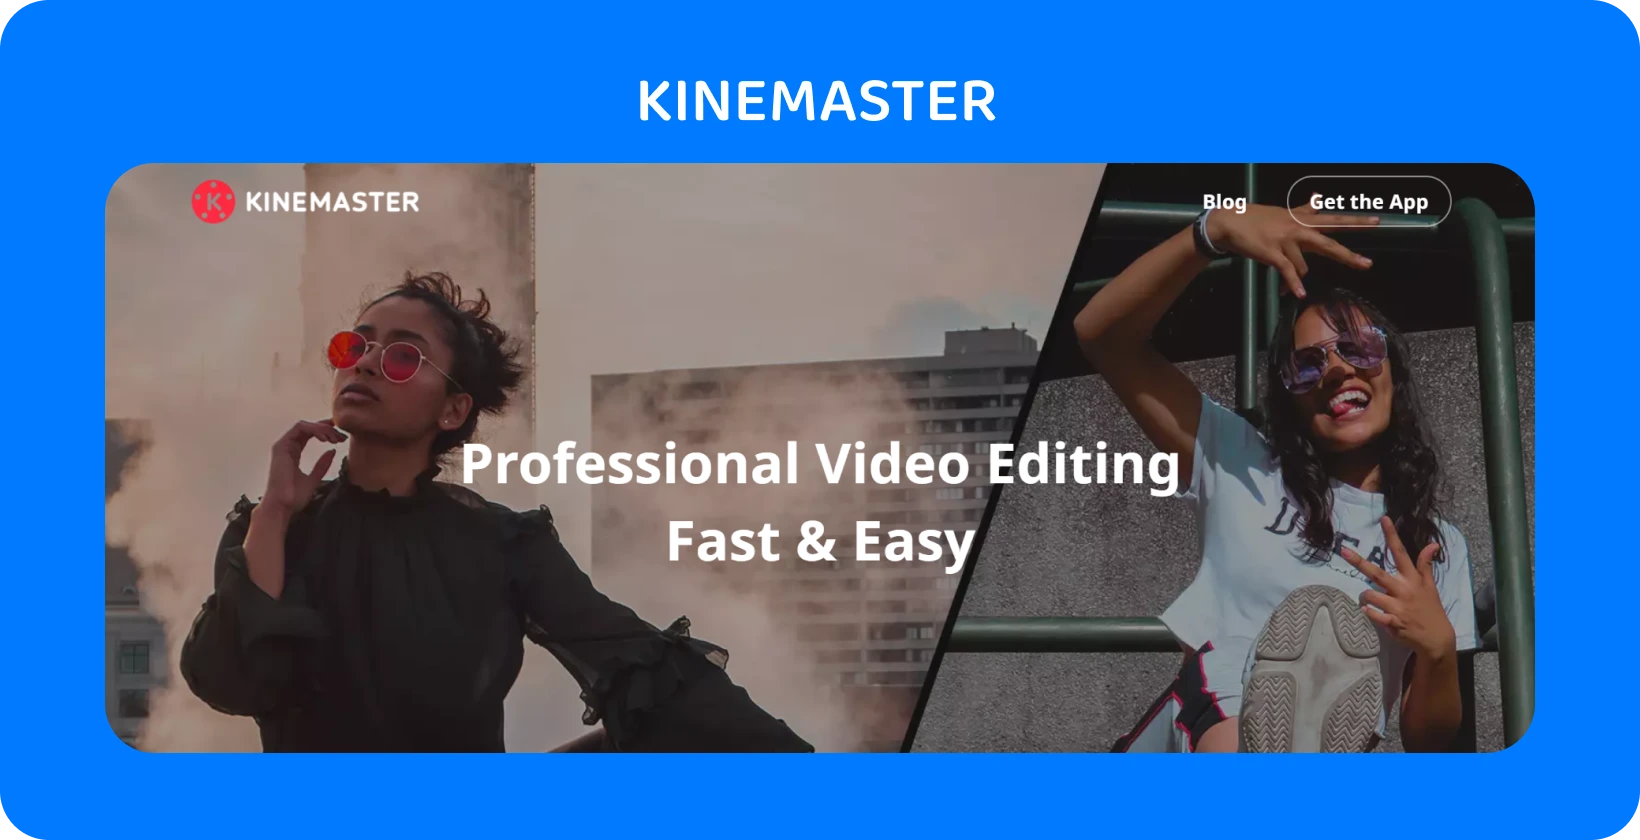 KineMaster app-advertentie met twee modellen die poseren, met de nadruk op professionele videobewerking die snel en gemakkelijk is.